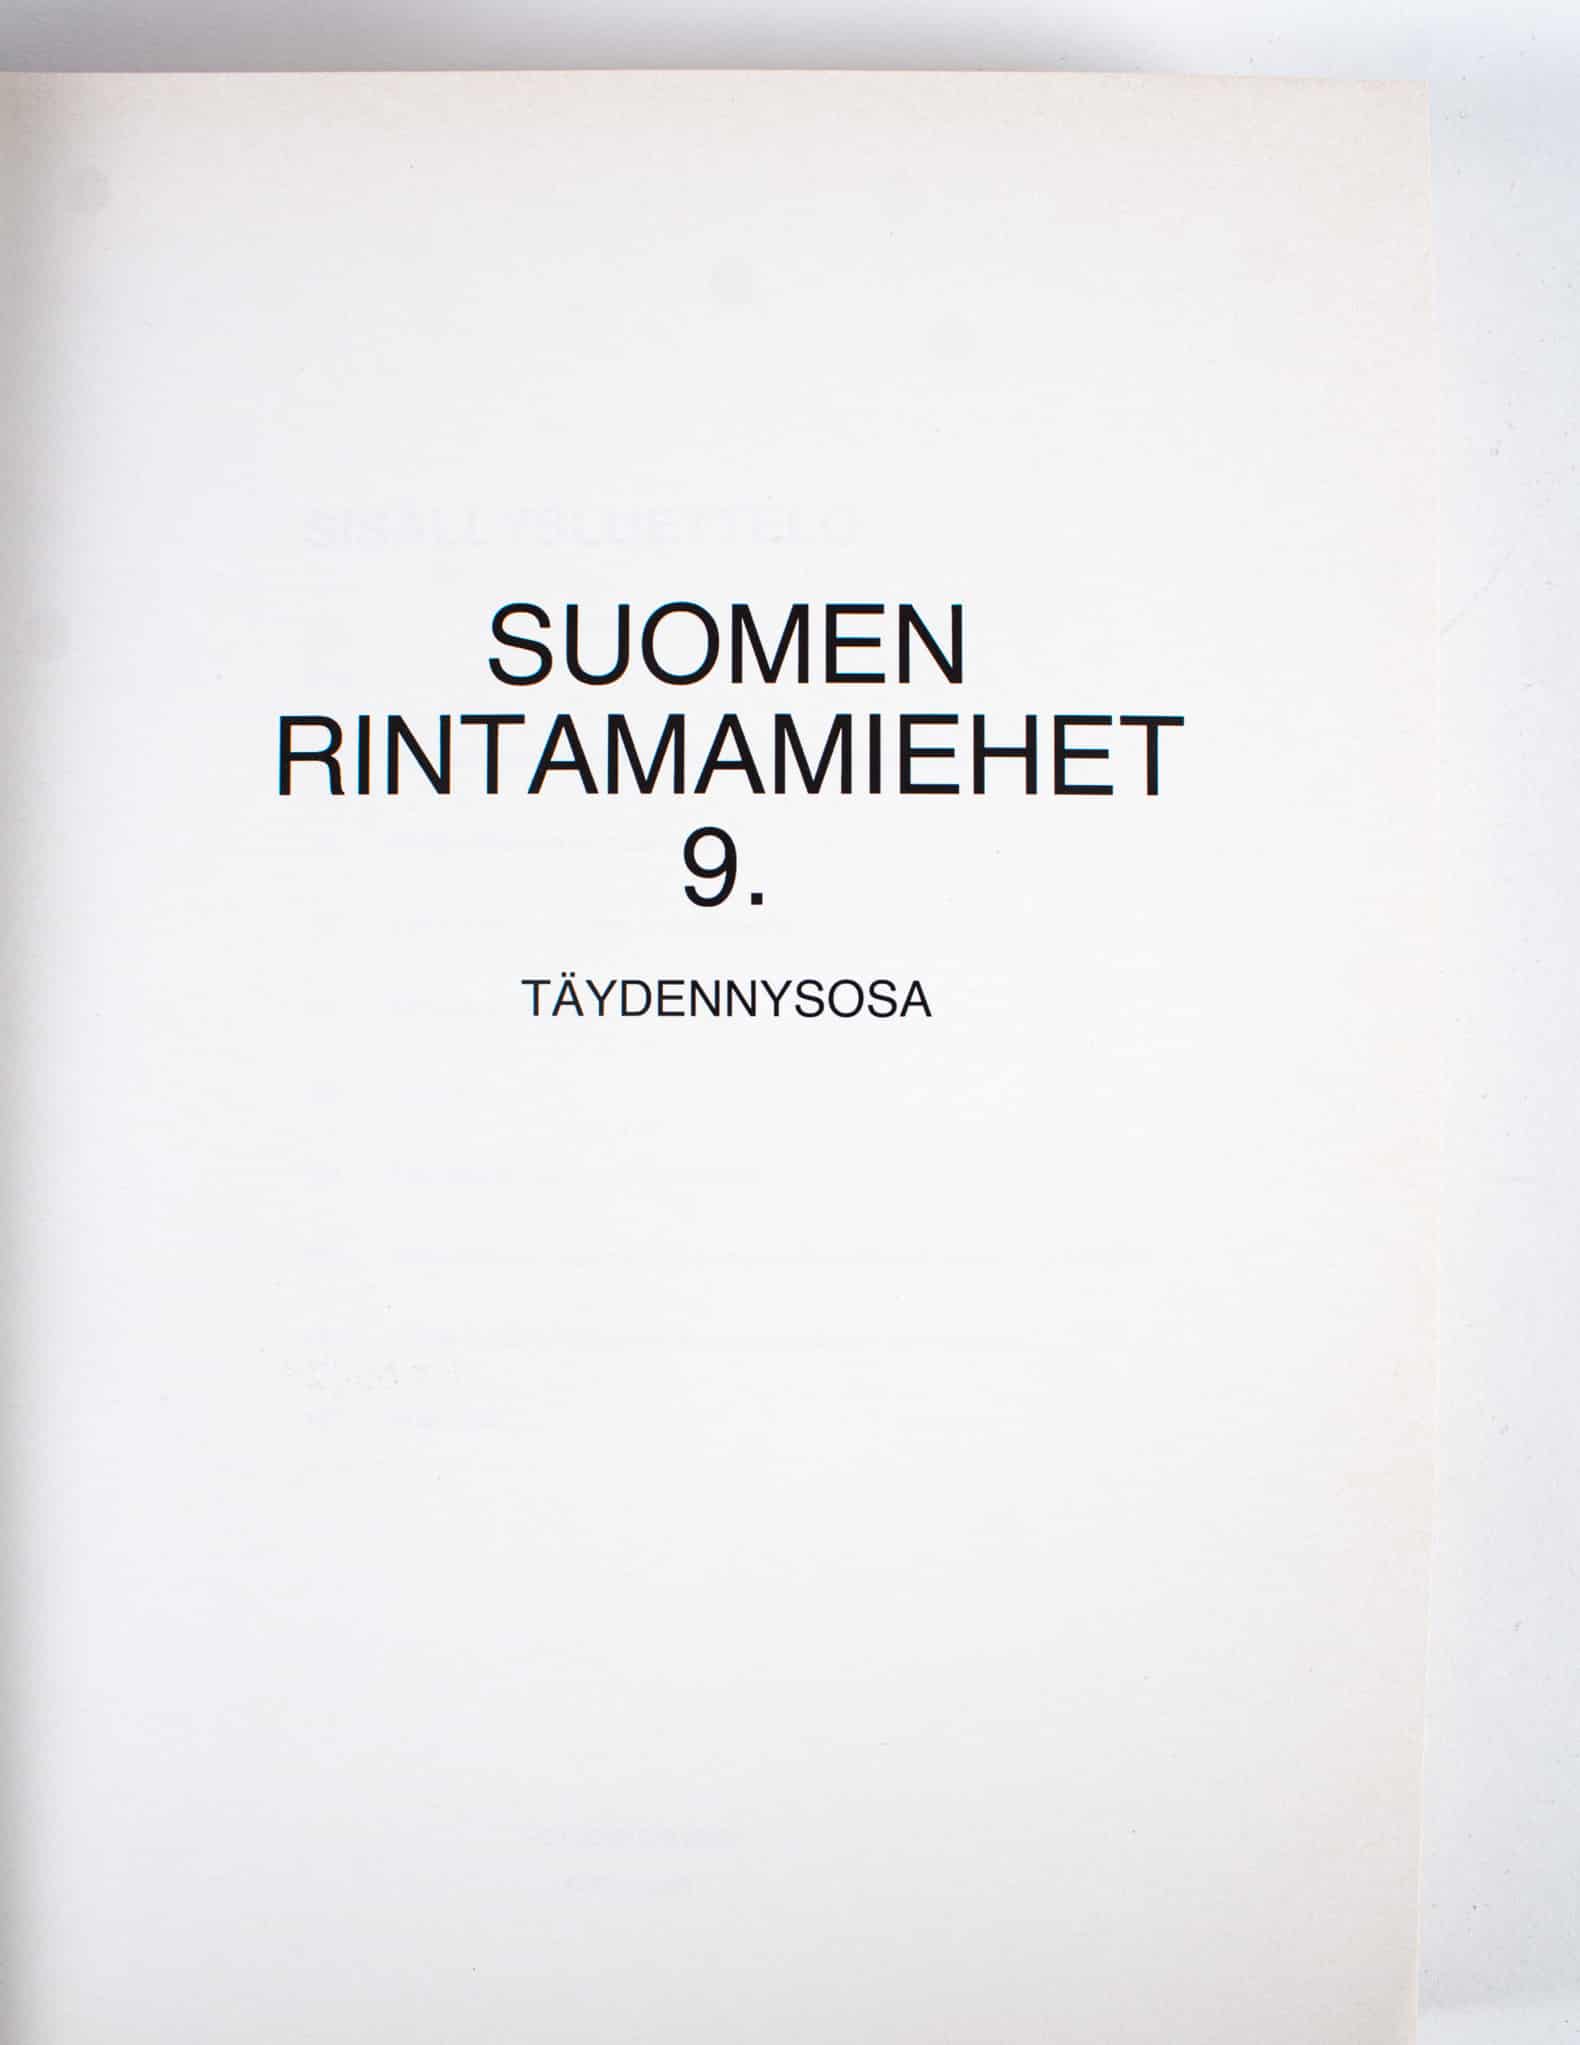 Suomen Rintamamiehet 1939-45, 9. täydennysosa - Turun Ekotori